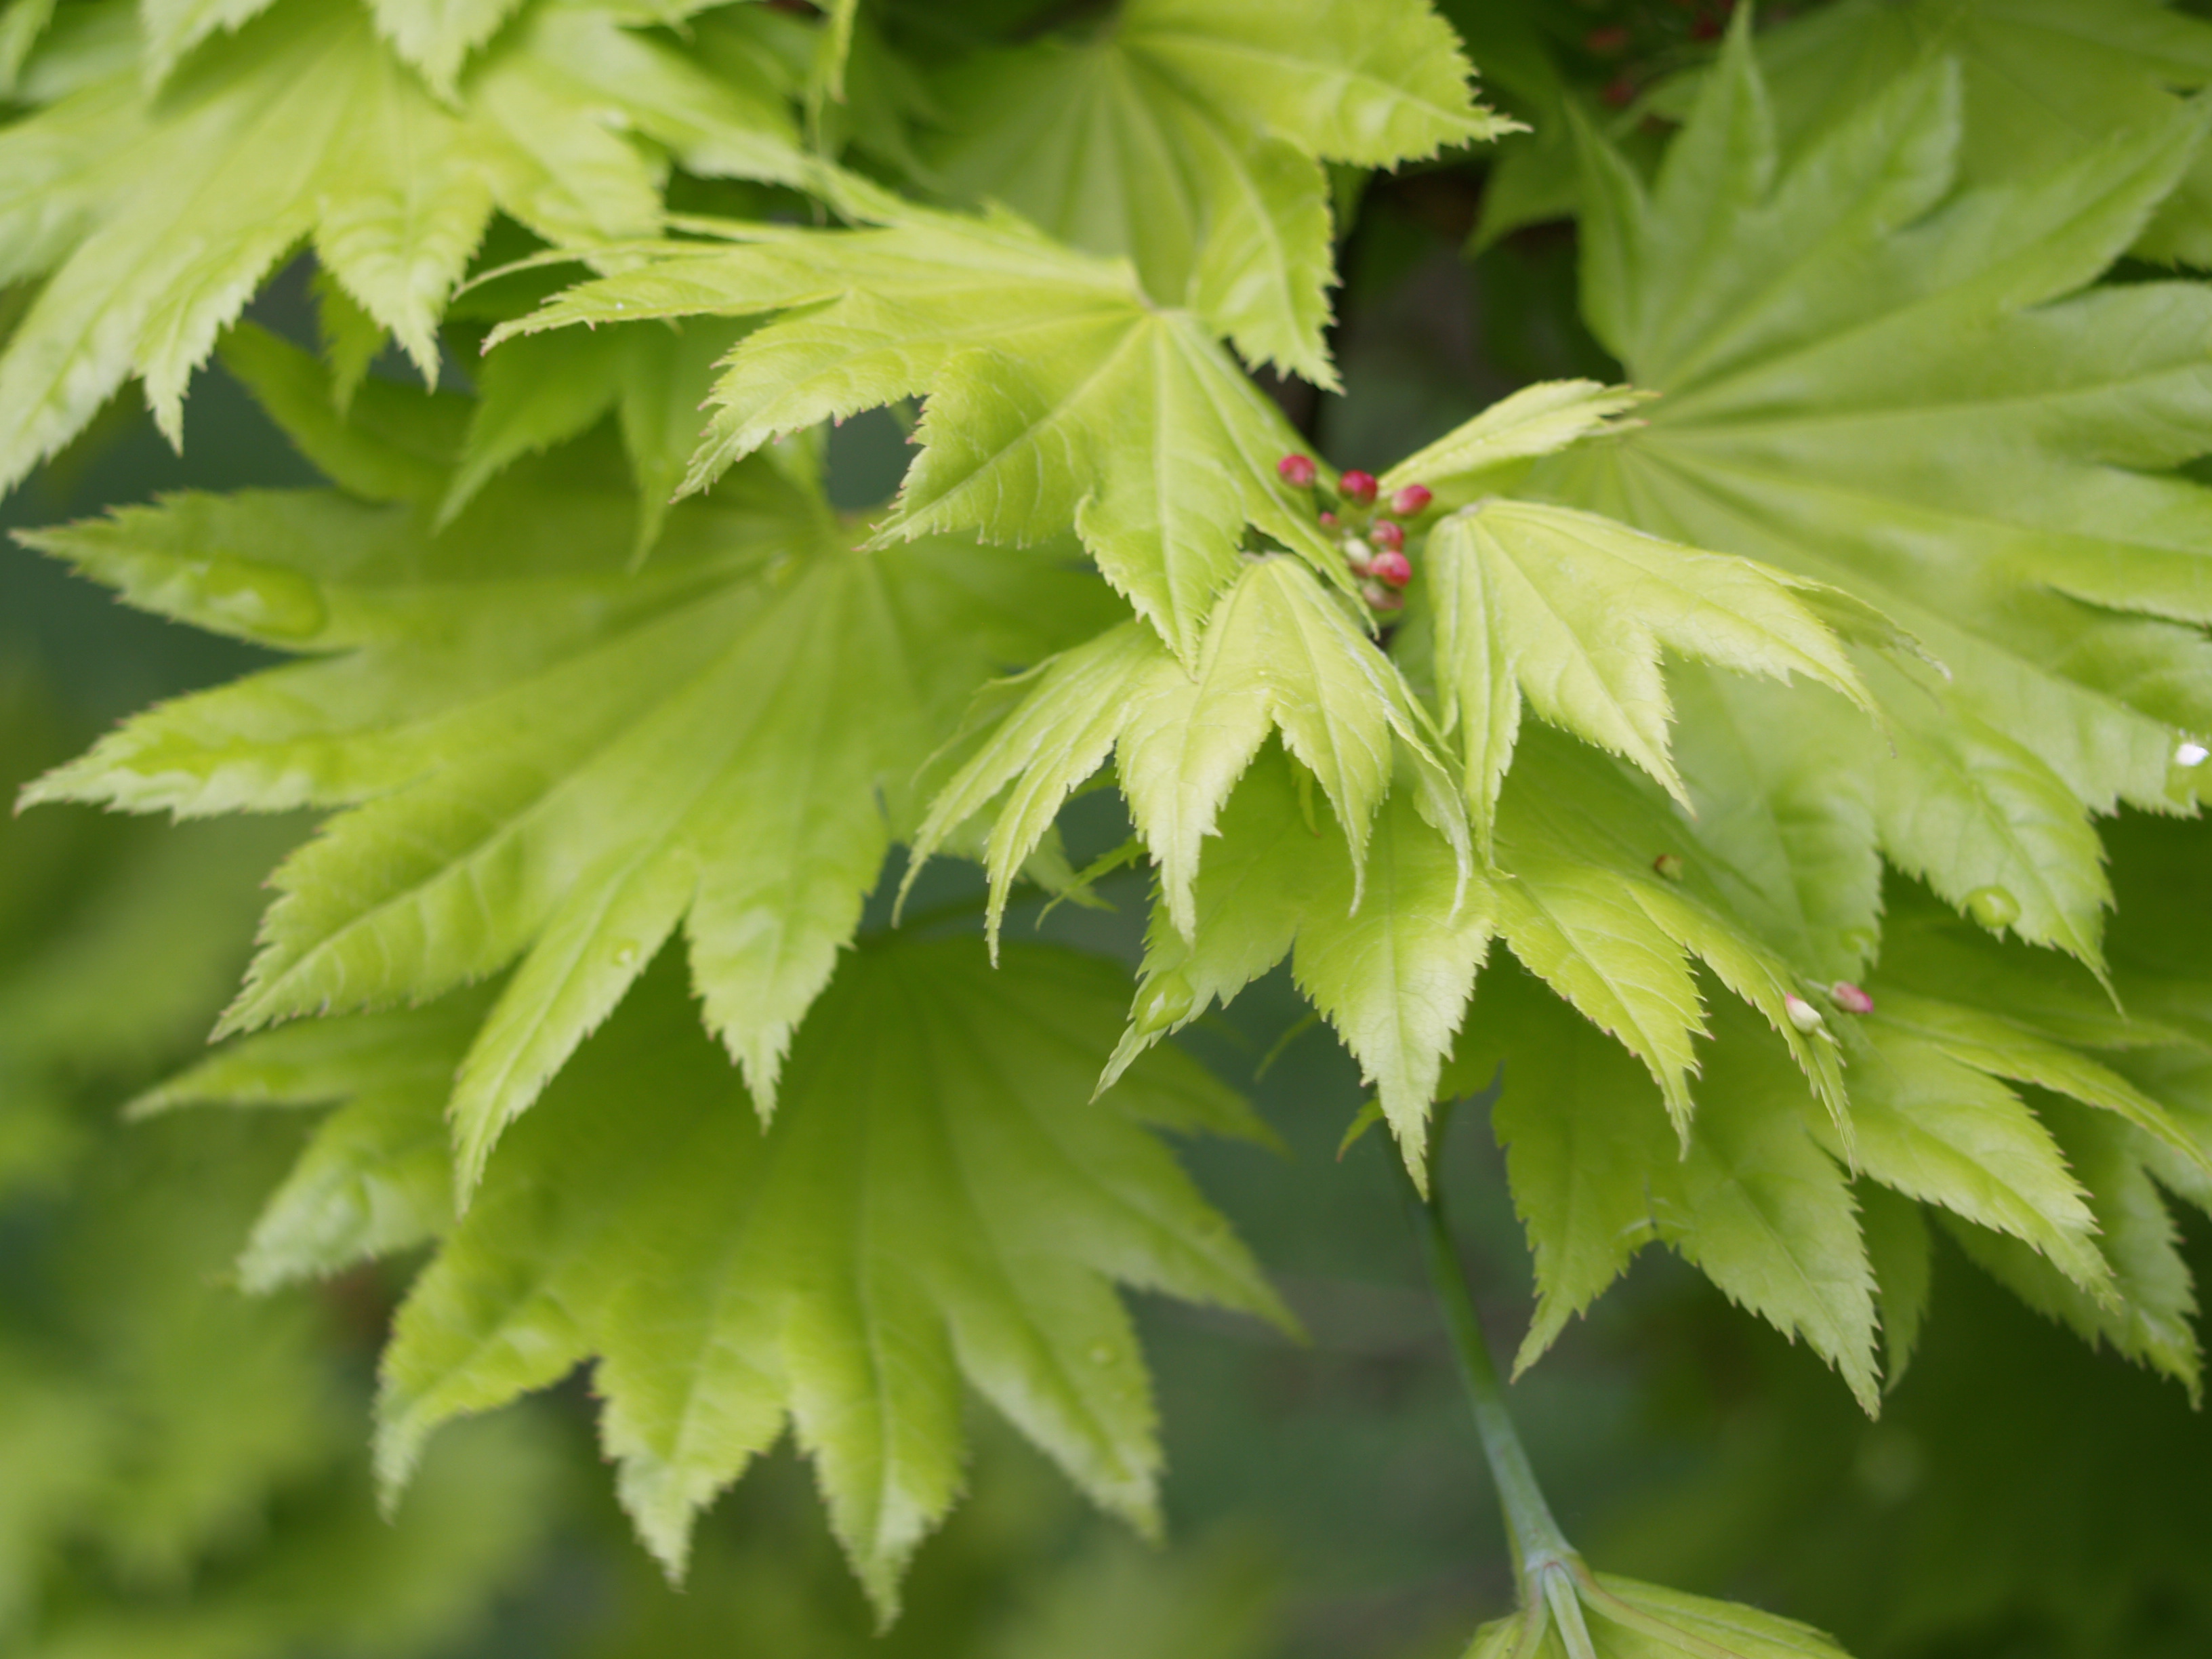 More about Japanese maples | Ramblin' through Dave's Garden